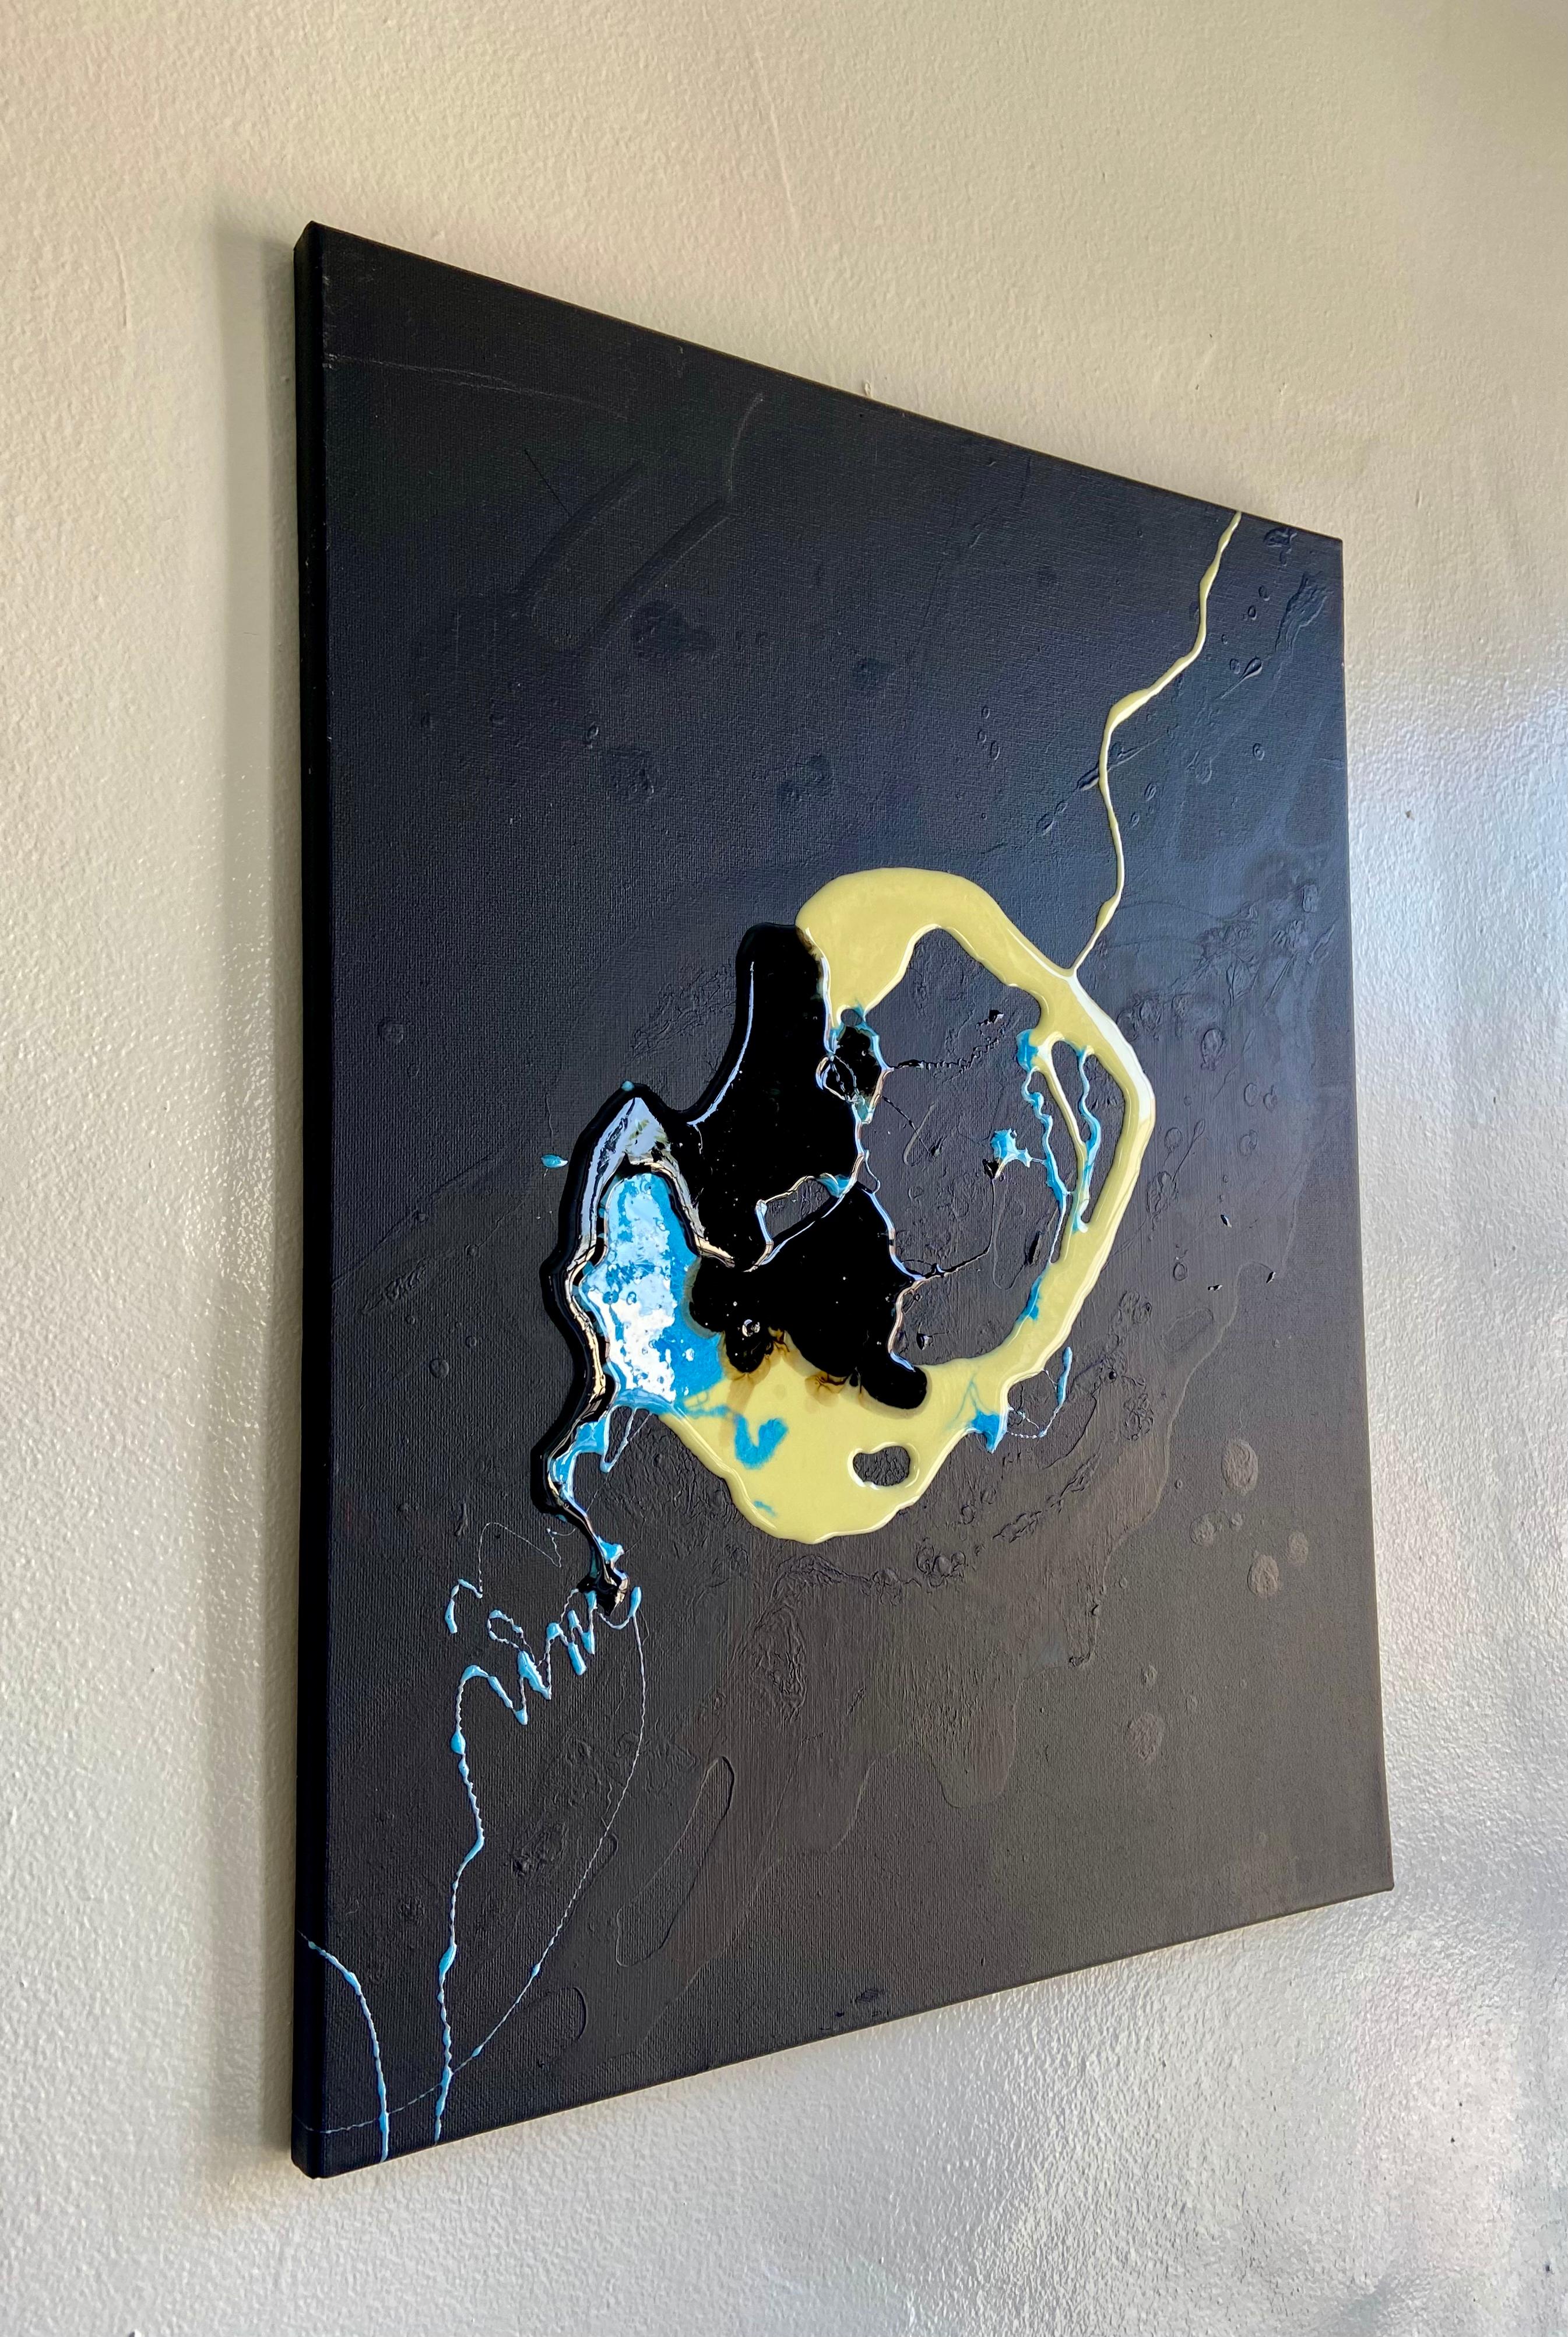 Face liquide - art d'abstraction réalisé en bleu, jaune, noir et blanc - Abstrait Painting par Lena Cher